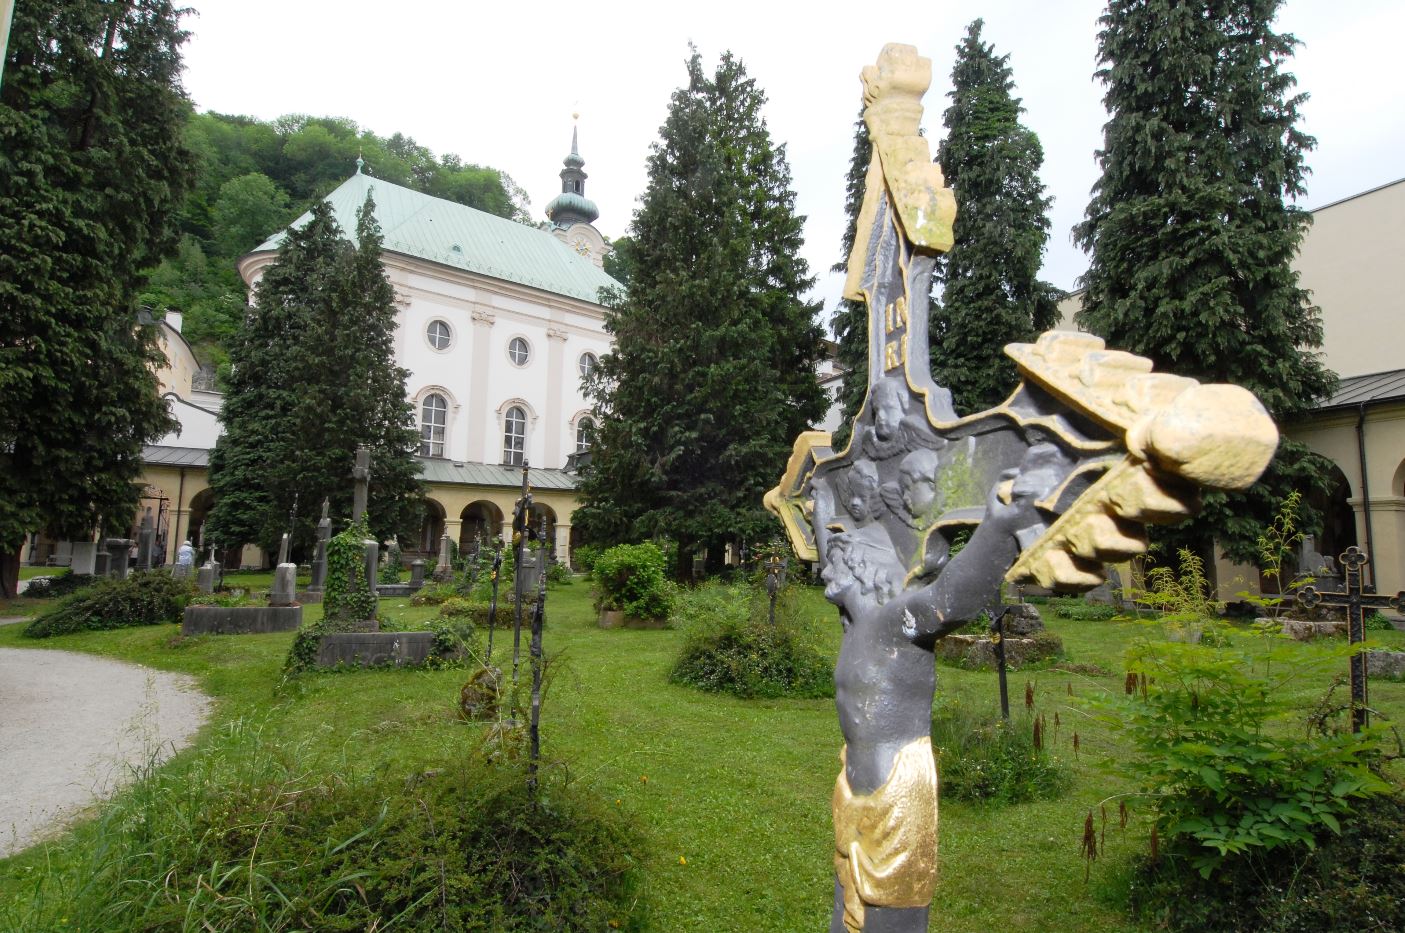 Sankt Sebastian mit Friedhof umgeben von vielen großen Bäumen.